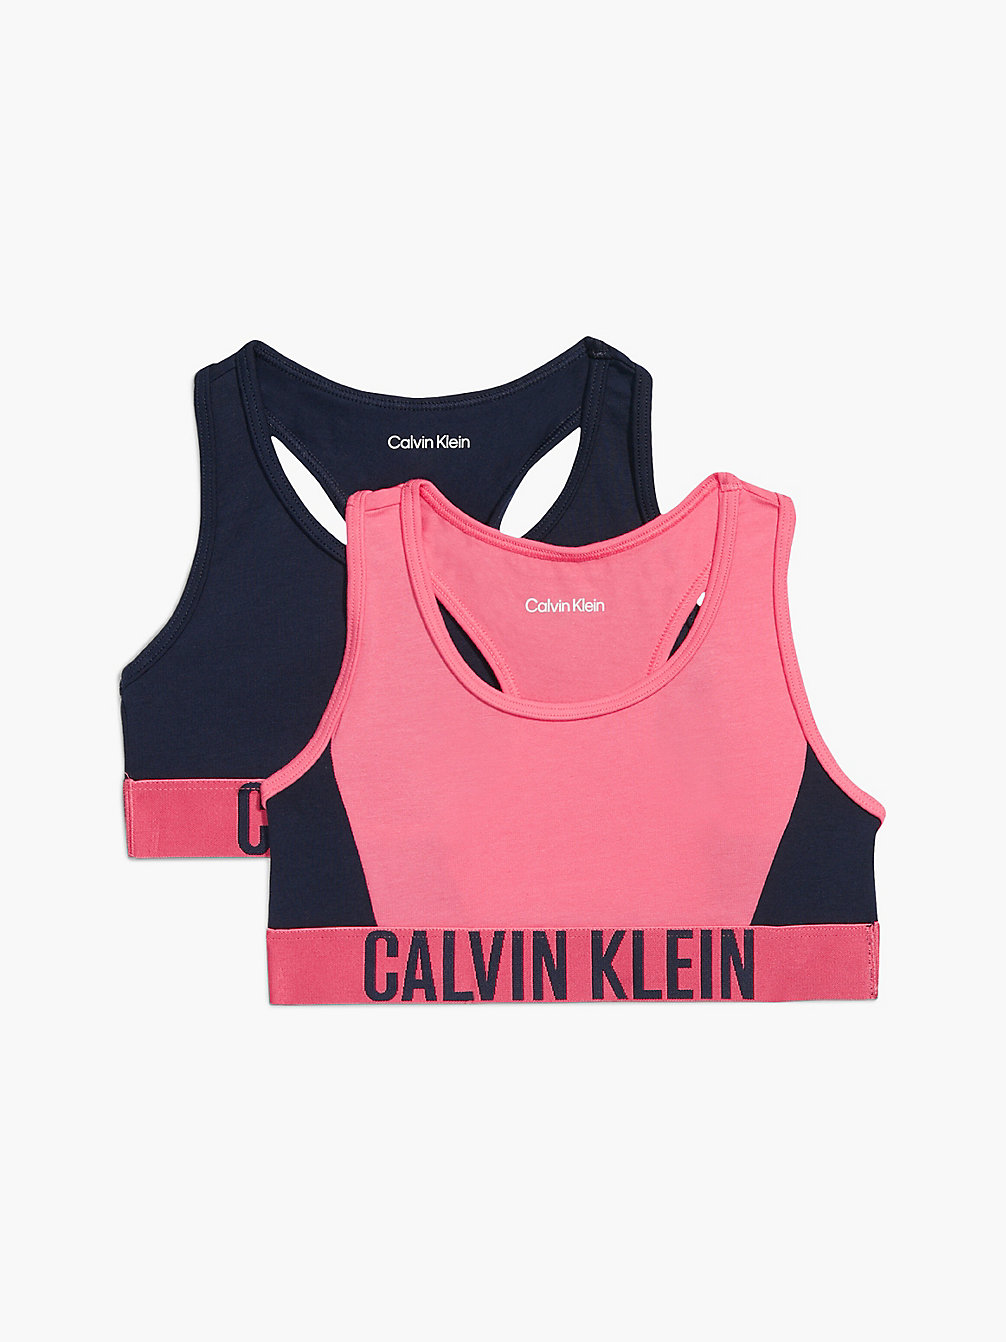 PINKDAWN/NAVYIRIS 2 Pack Girls Bralettes - Intense Power undefined girls Calvin Klein